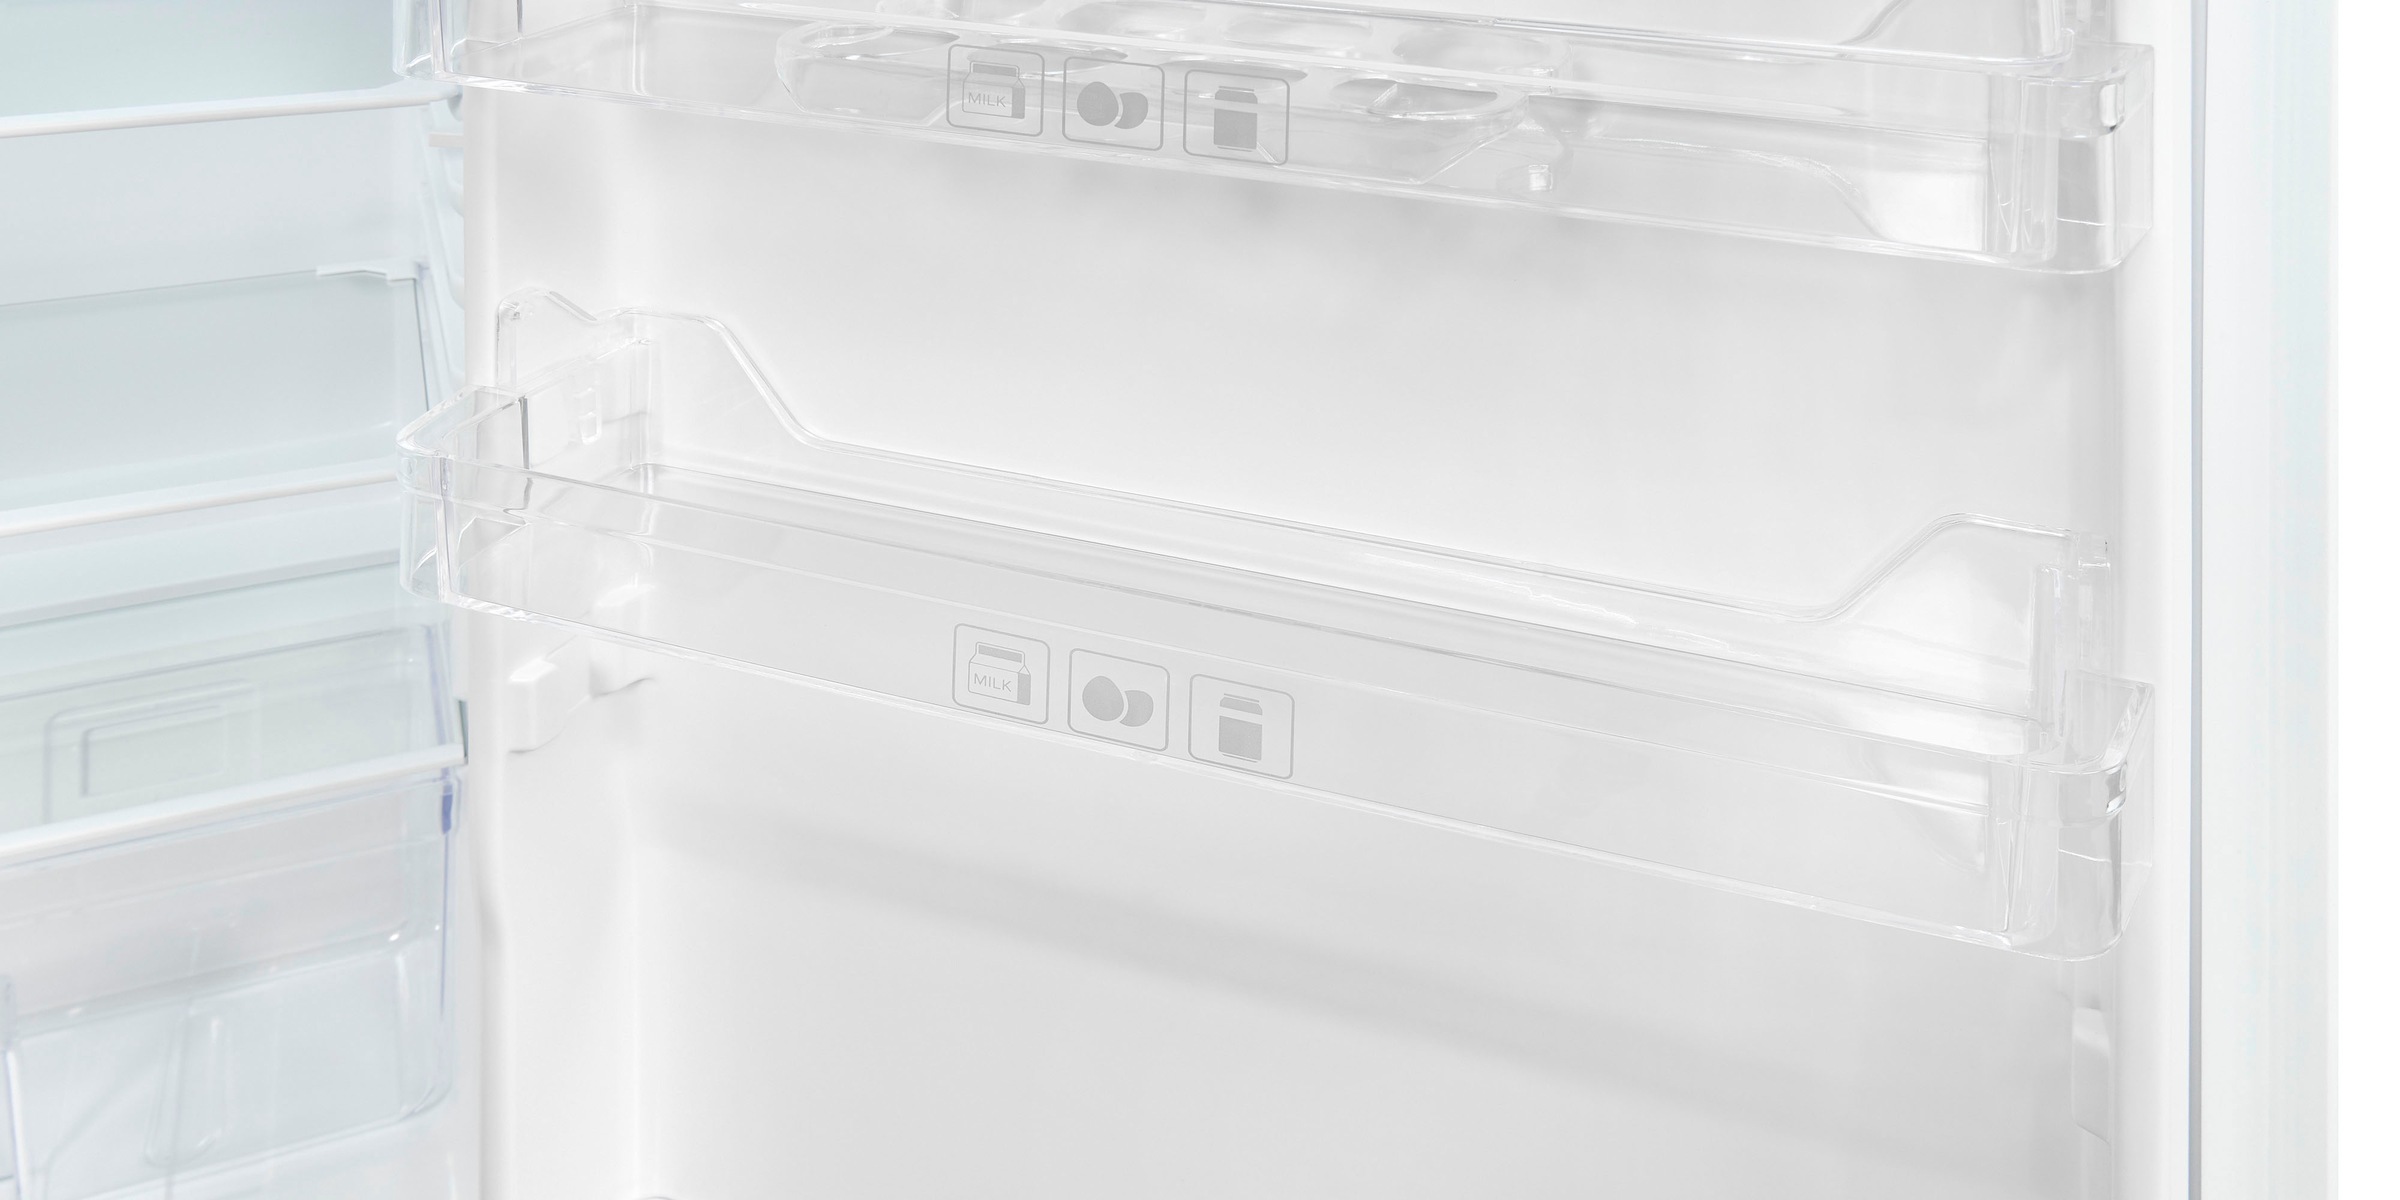 exquisit Einbaukühlschrank »EKS131-V-040E«, EKS131-V-040E, 88 cm hoch, 54 cm breit